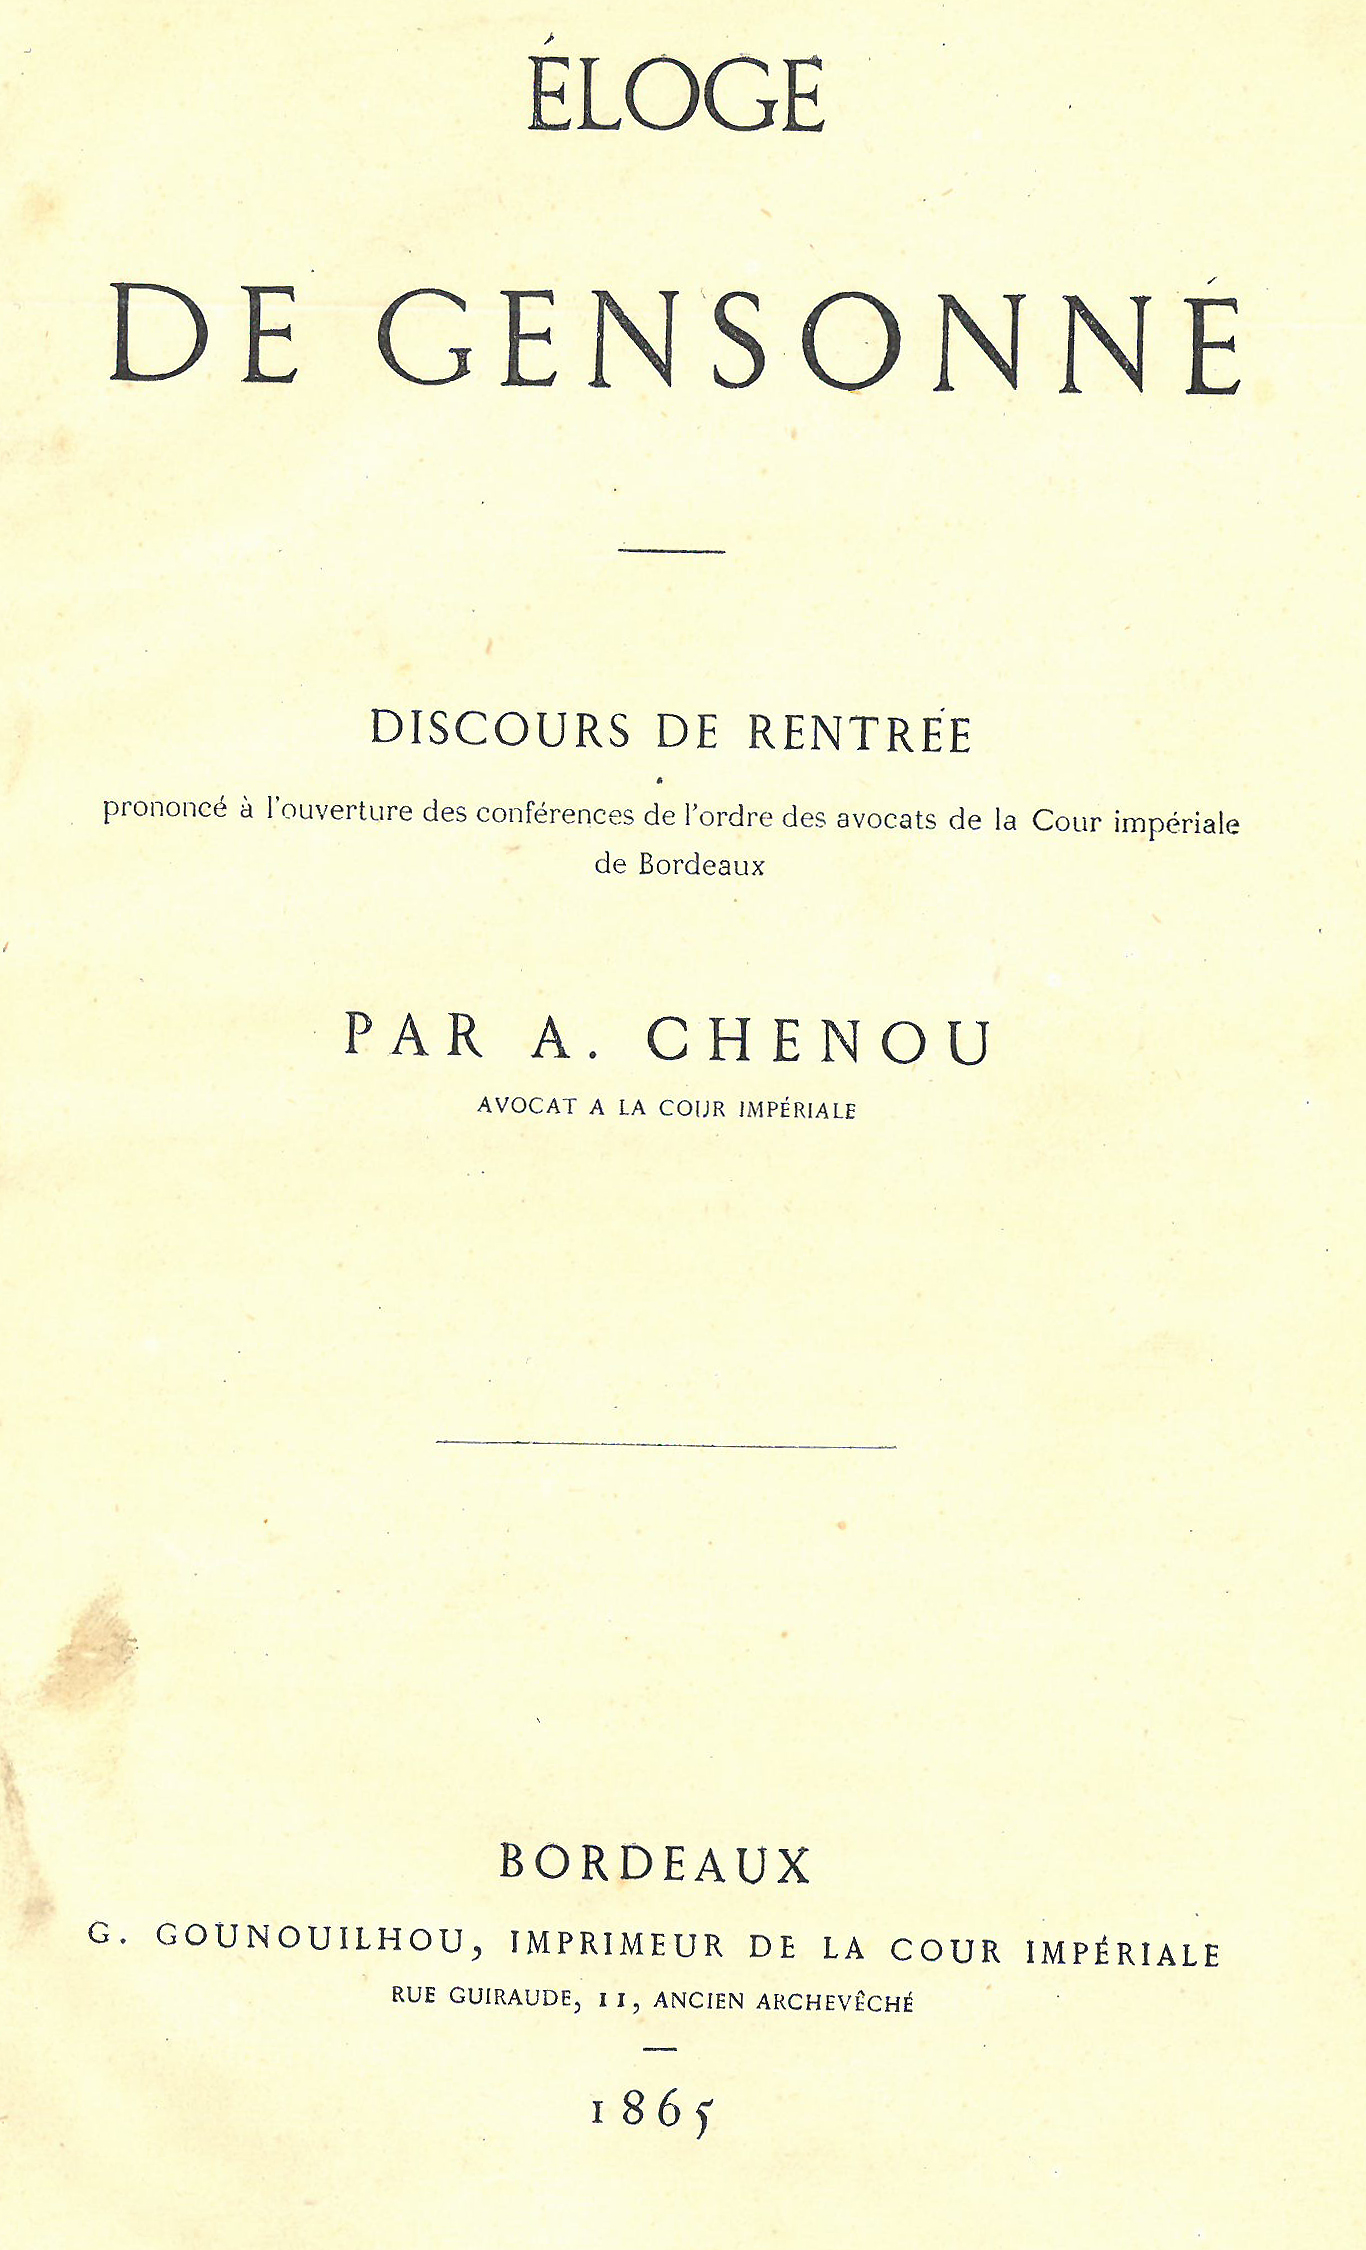 Eloge de Gensonné prononçé lors de la Rentrée des Conférences 1853 par A Chenou.